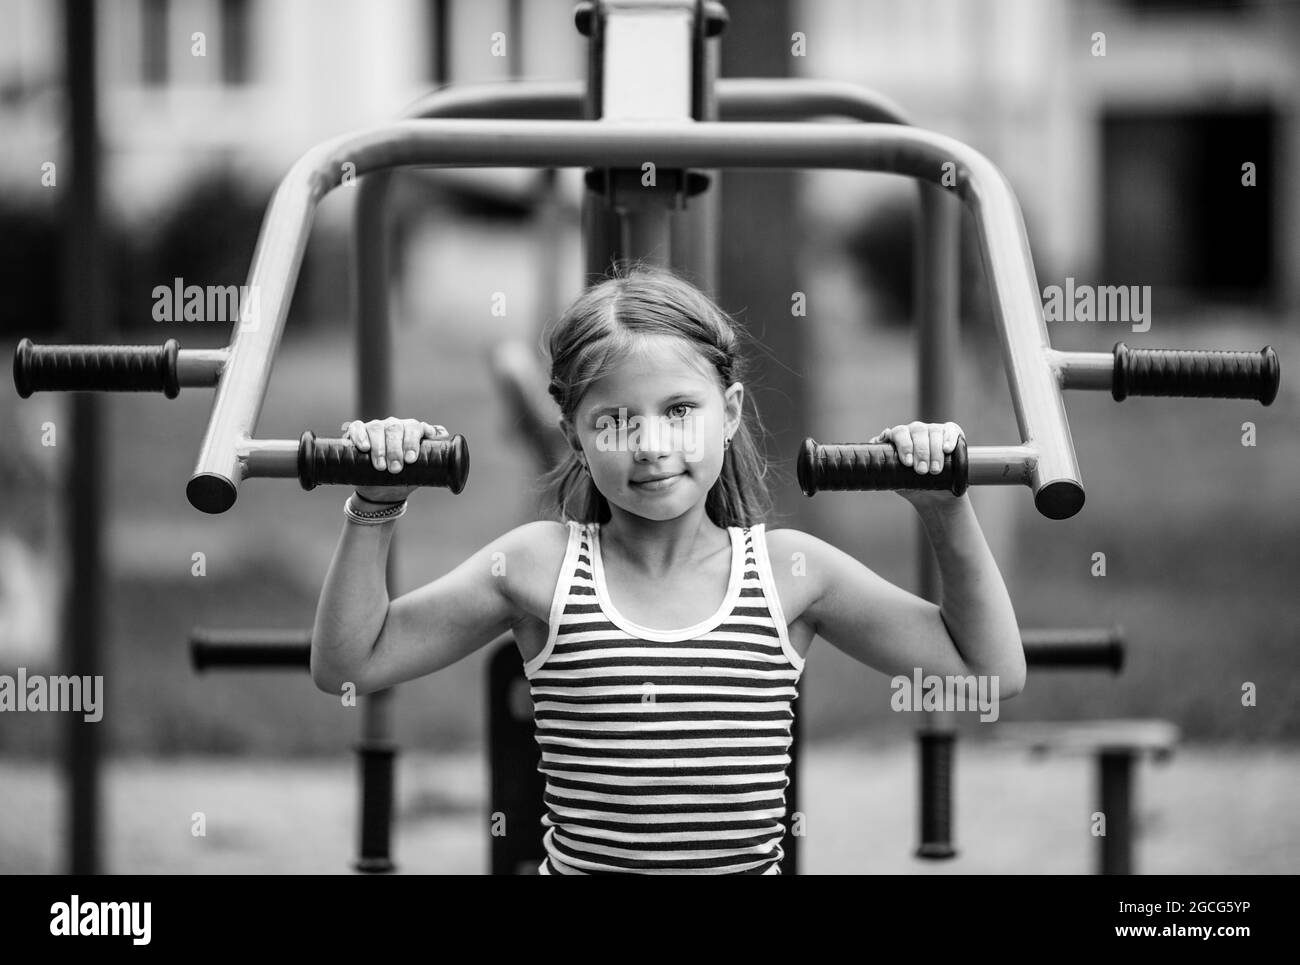 Kleines Mädchenportrait auf einer Trainermaschine auf dem Spielplatz im Freien. Schwarzweiß-Foto. Stockfoto